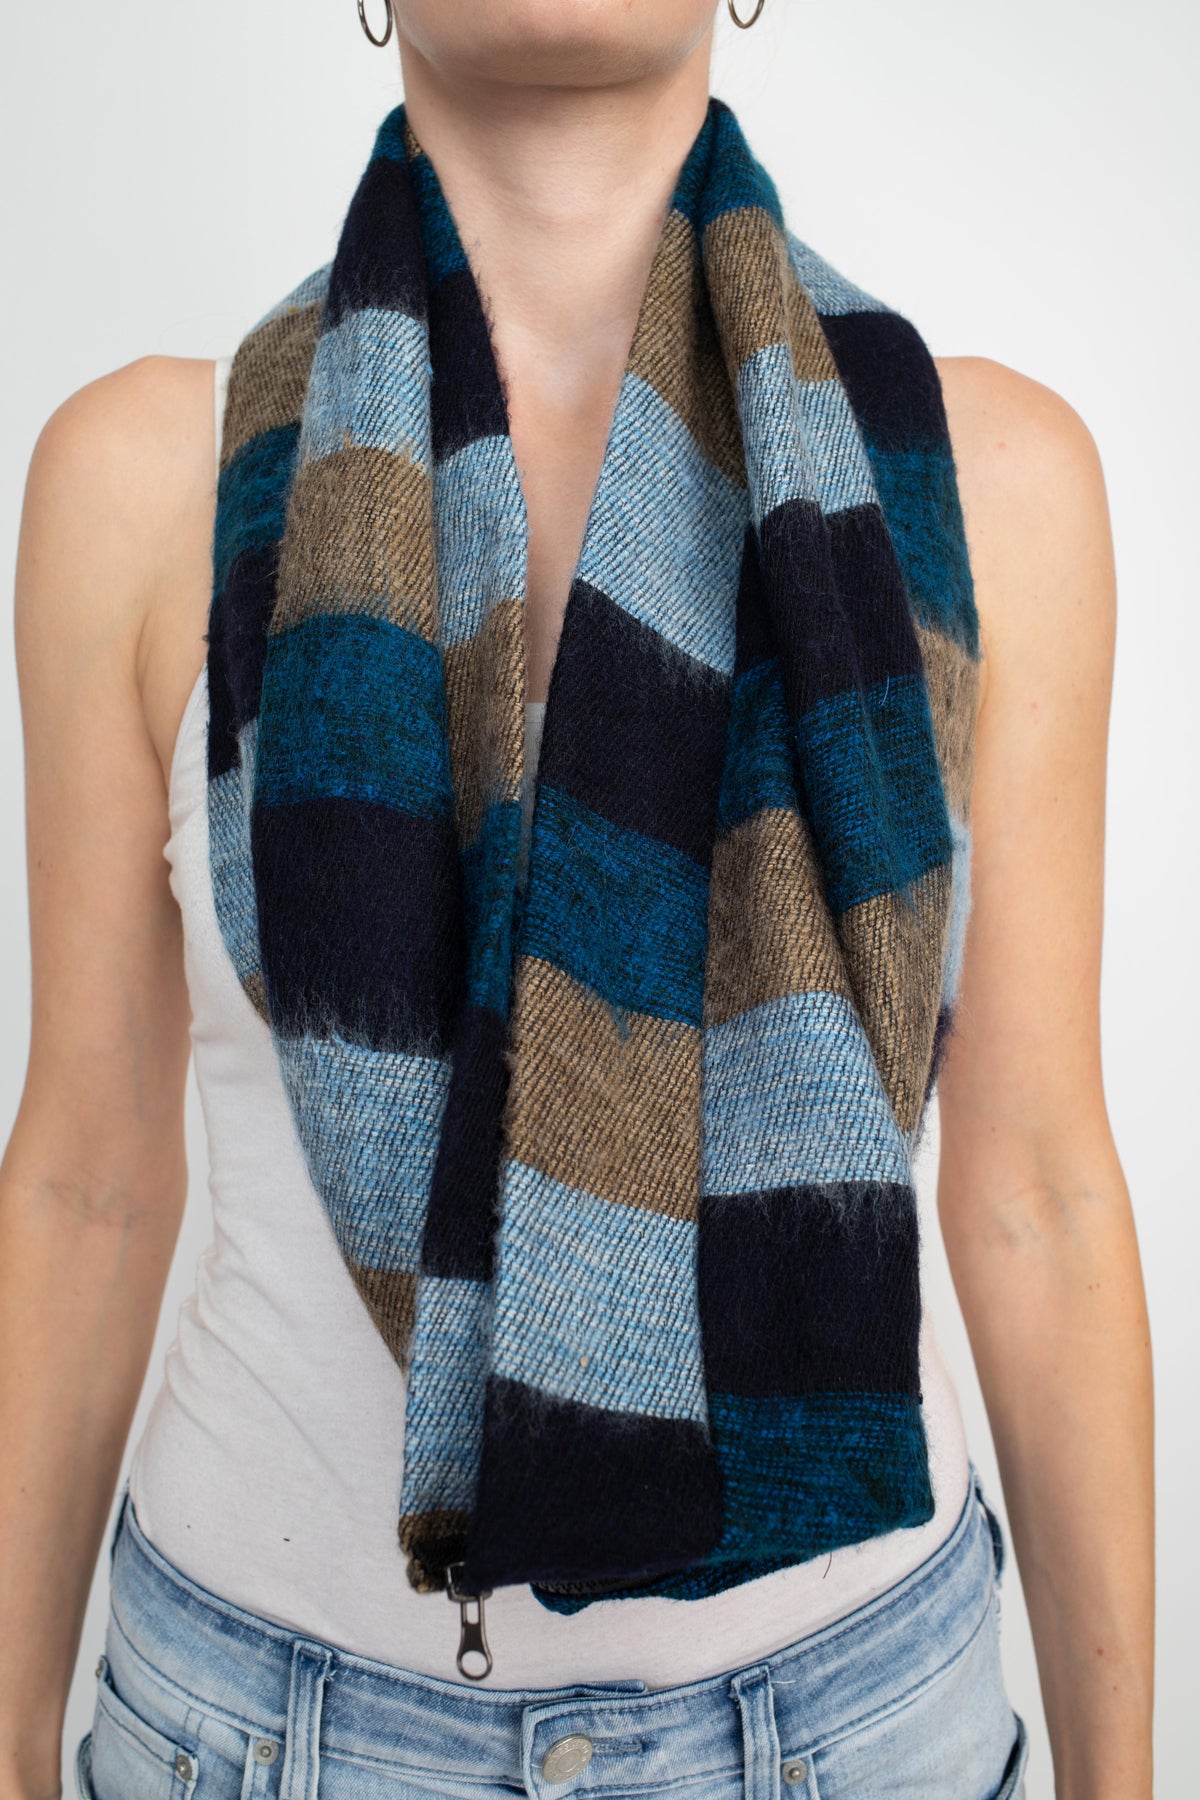 Warm Tri stiped infinity scarf with Zipper